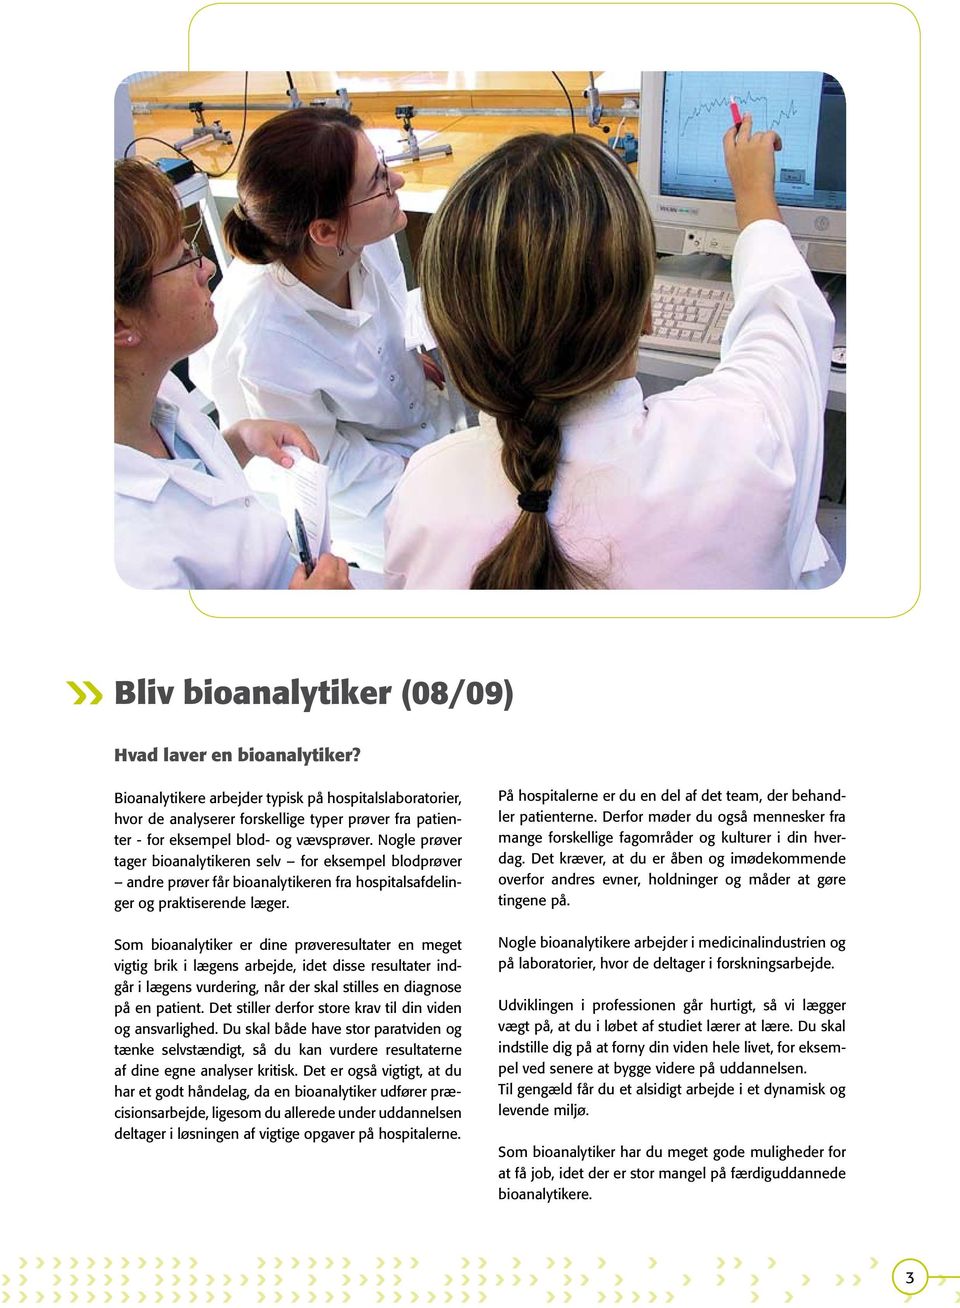 Nogle prøver tager bioanalytikeren selv for eksempel blodprøver andre prøver får bioanalytikeren fra hospitalsafdelinger og praktiserende læger.